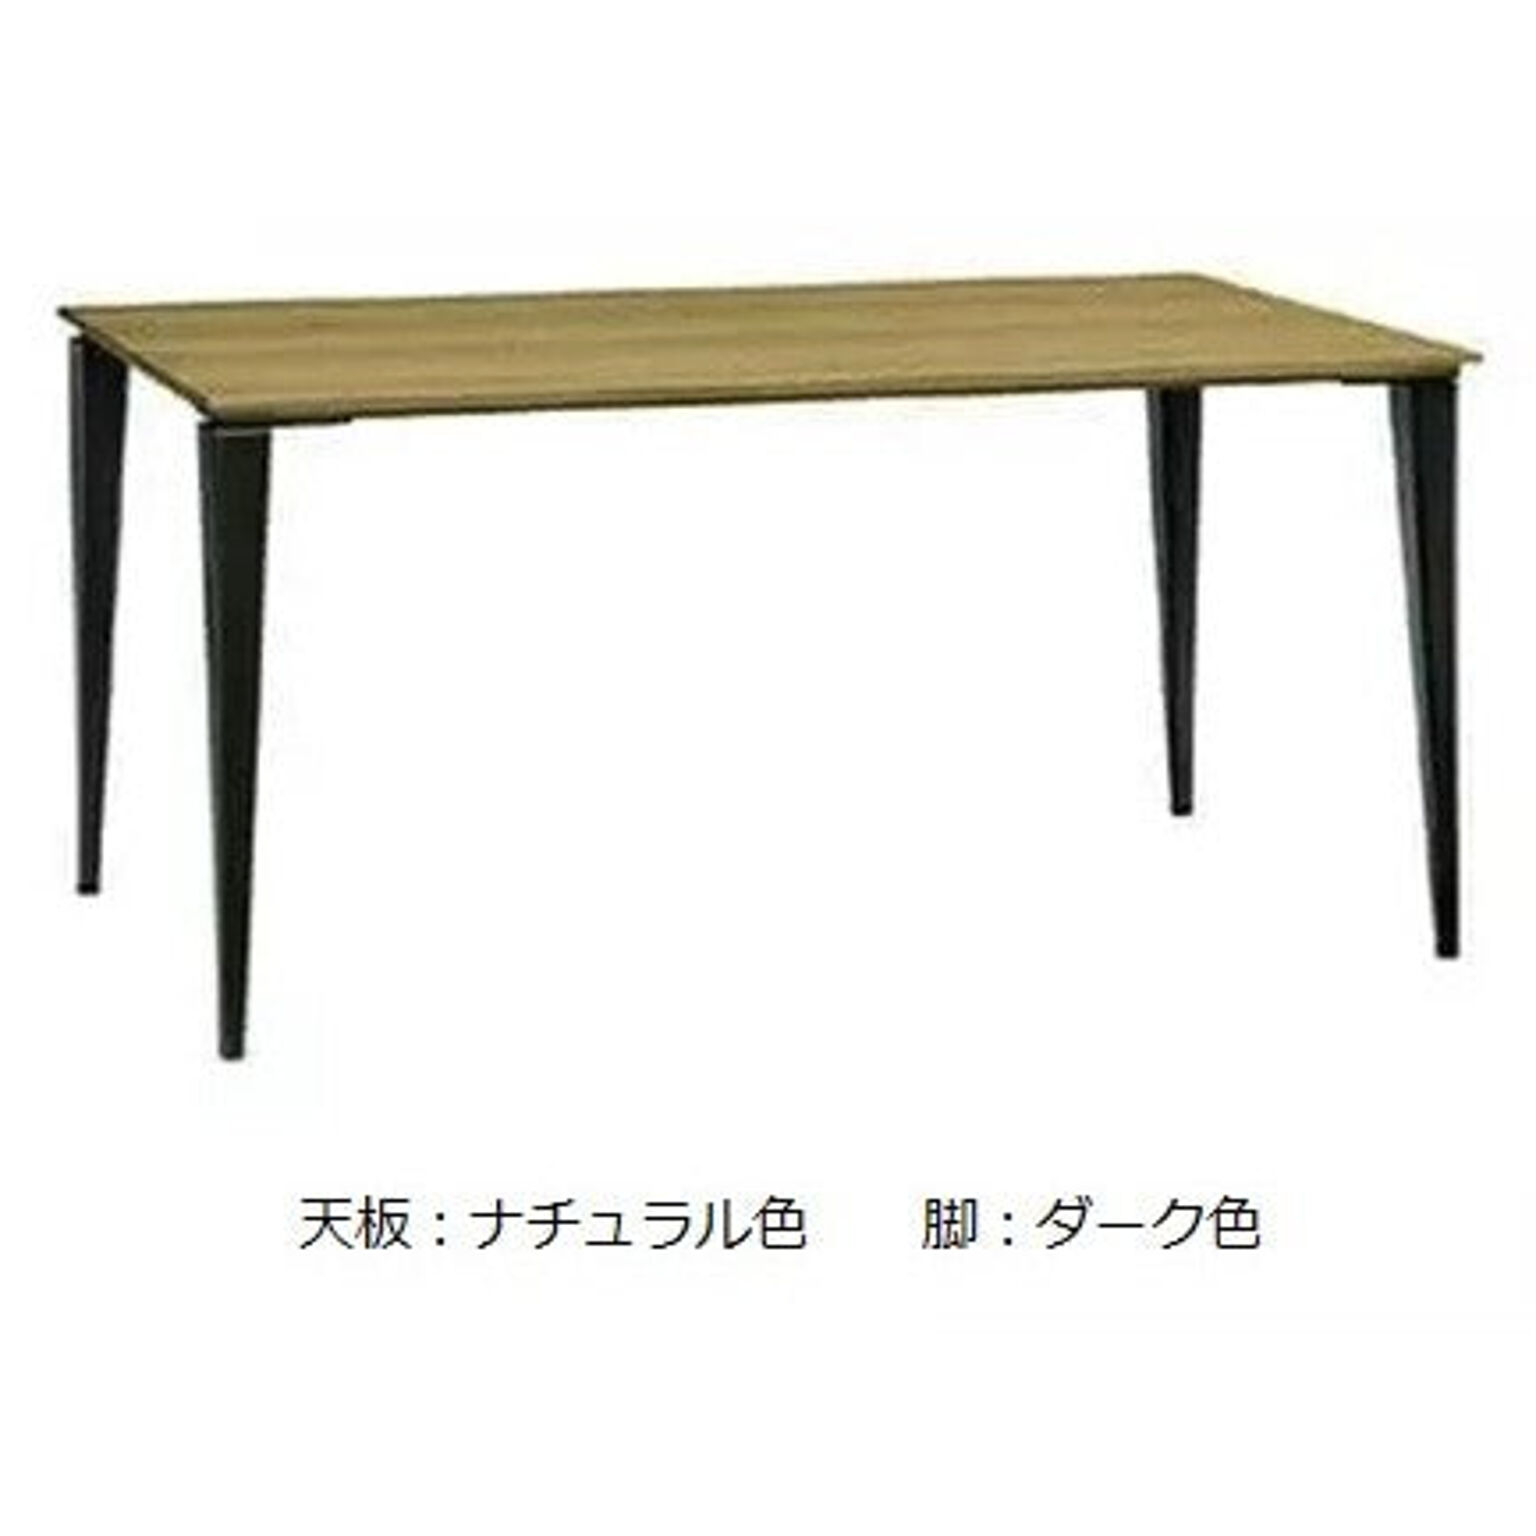 ダイニングテーブル カラー4色 幅135 奥行80 高さ71.5 長方形 食卓テーブル 作業テーブル DUAL-NUOVO デュアル・ヌーボ DULNT-135 MAEDA FUNITURE